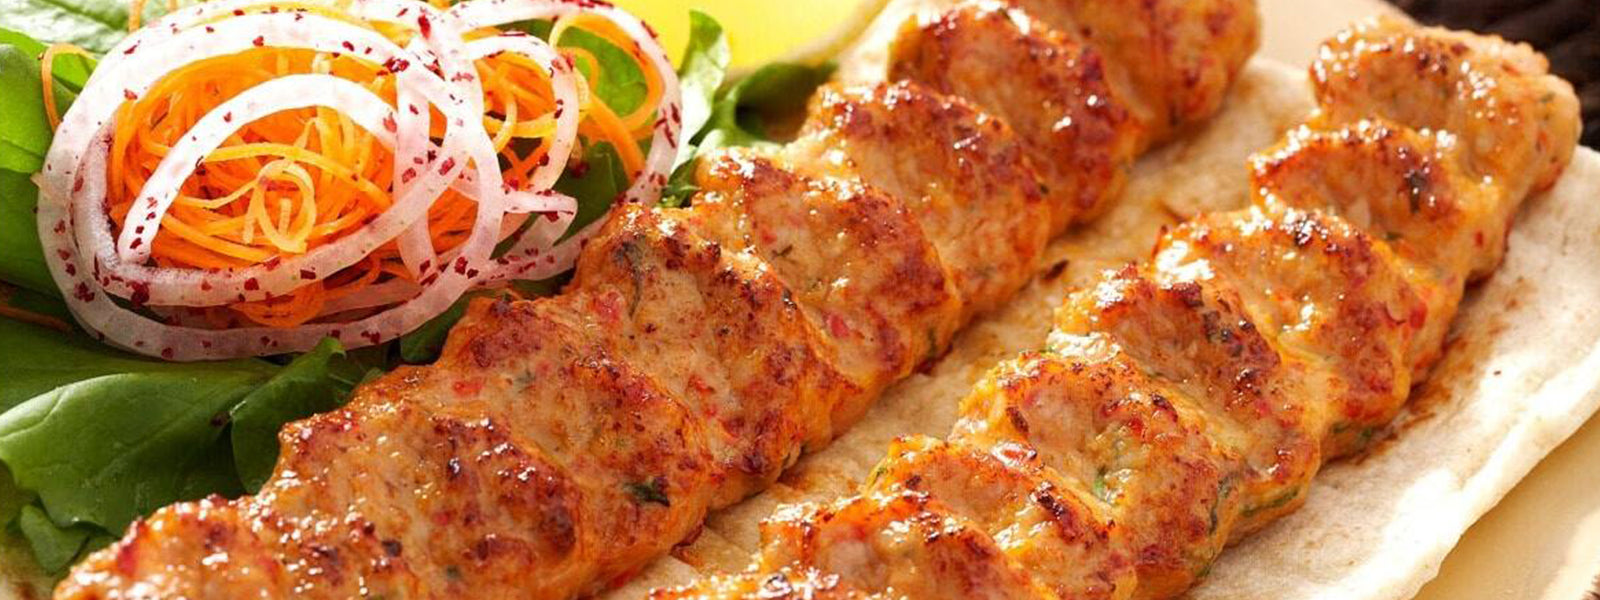 Purani Delhi Special - Qureshi Kebab